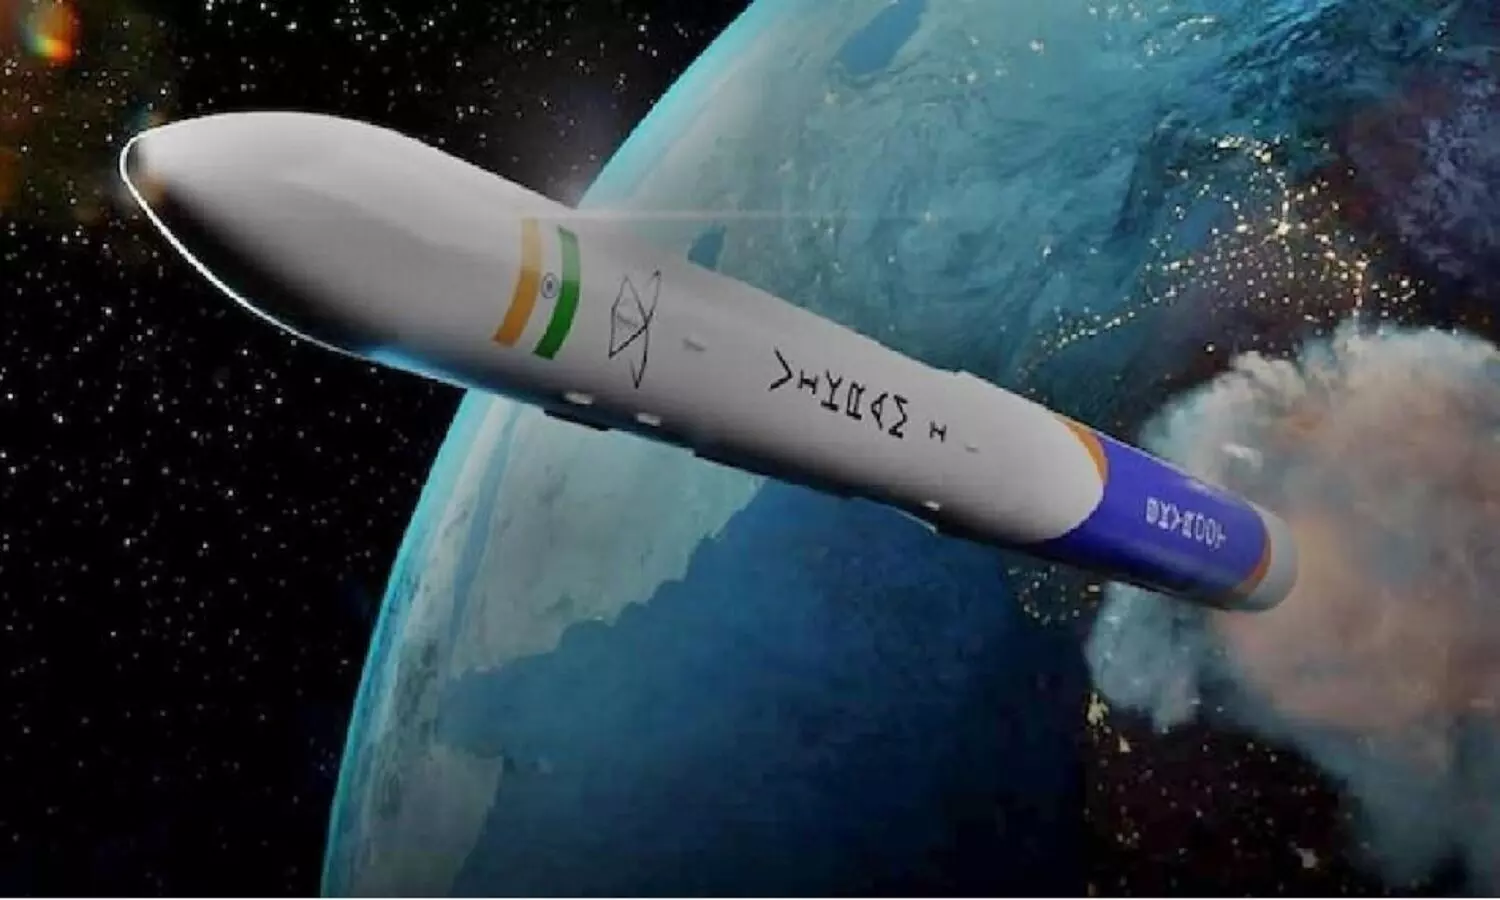 भारत का पहला प्राइवेट रॉकेट Vikram S Rocket, 18 नवंबर को उड़ान भरेगा, जानें क्यों जरूरी है ये मिशन